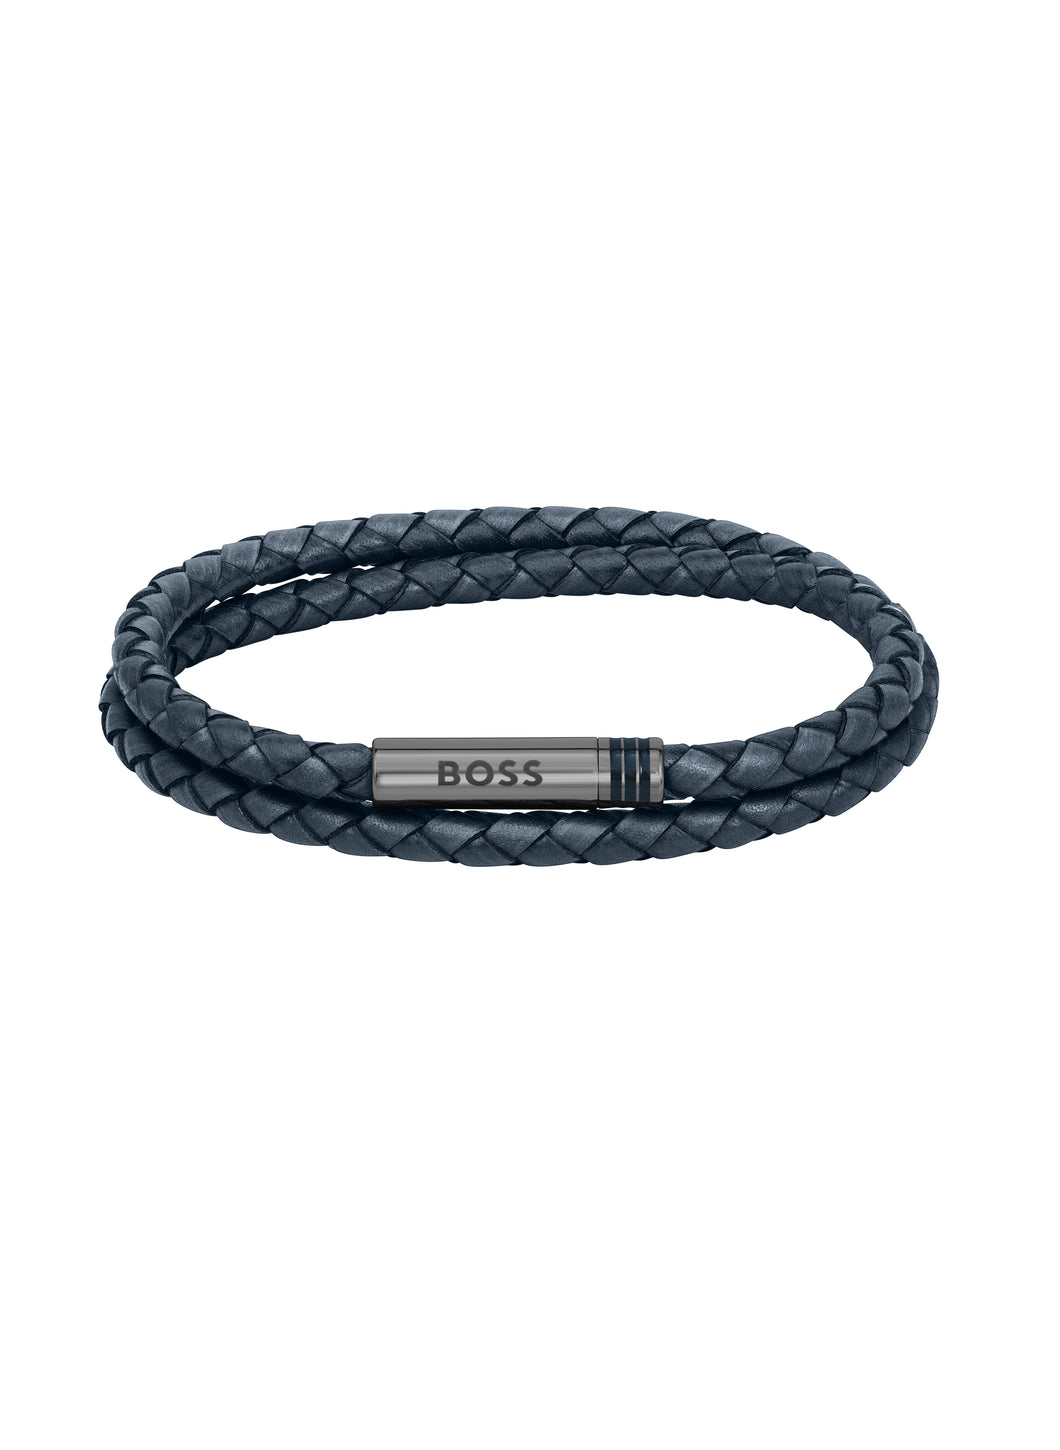 Gents BOSS Ares Men’s Blue Leather Bracelet